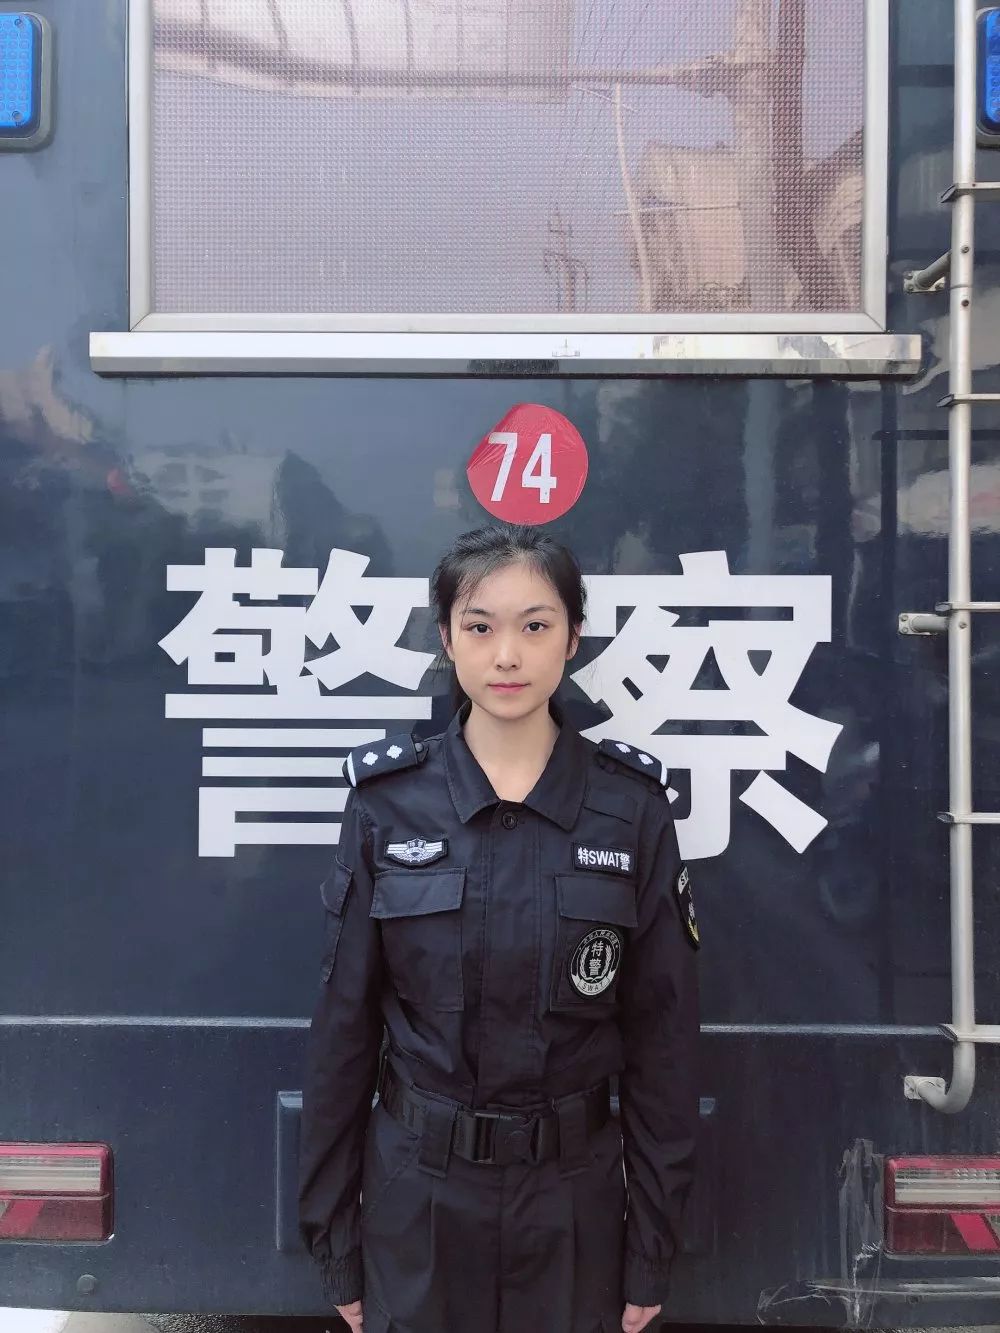 她火了:萍乡20岁女警花英姿飒爽,破案侦查样样在行